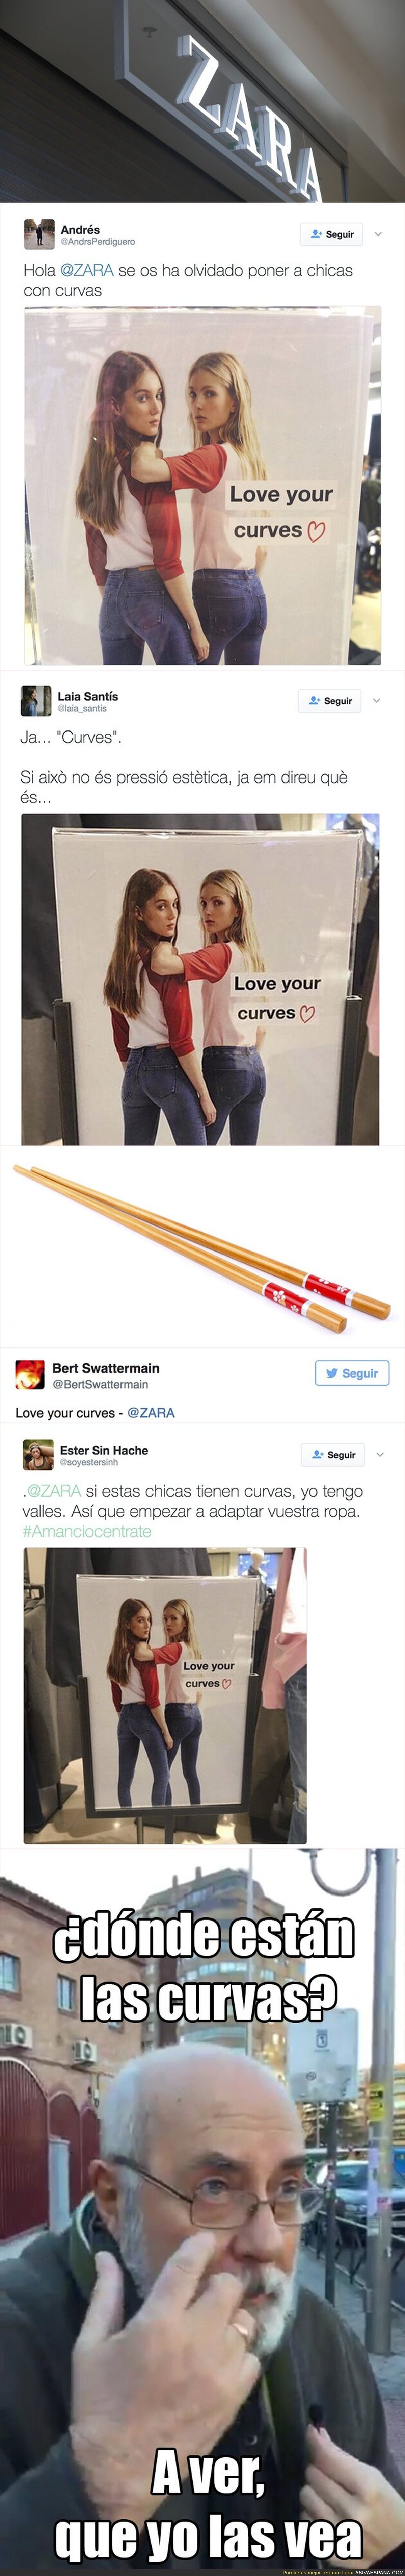 La polémica campaña de ZARA de pantalones con el lema "Love your curves" con modelos muy delgadas